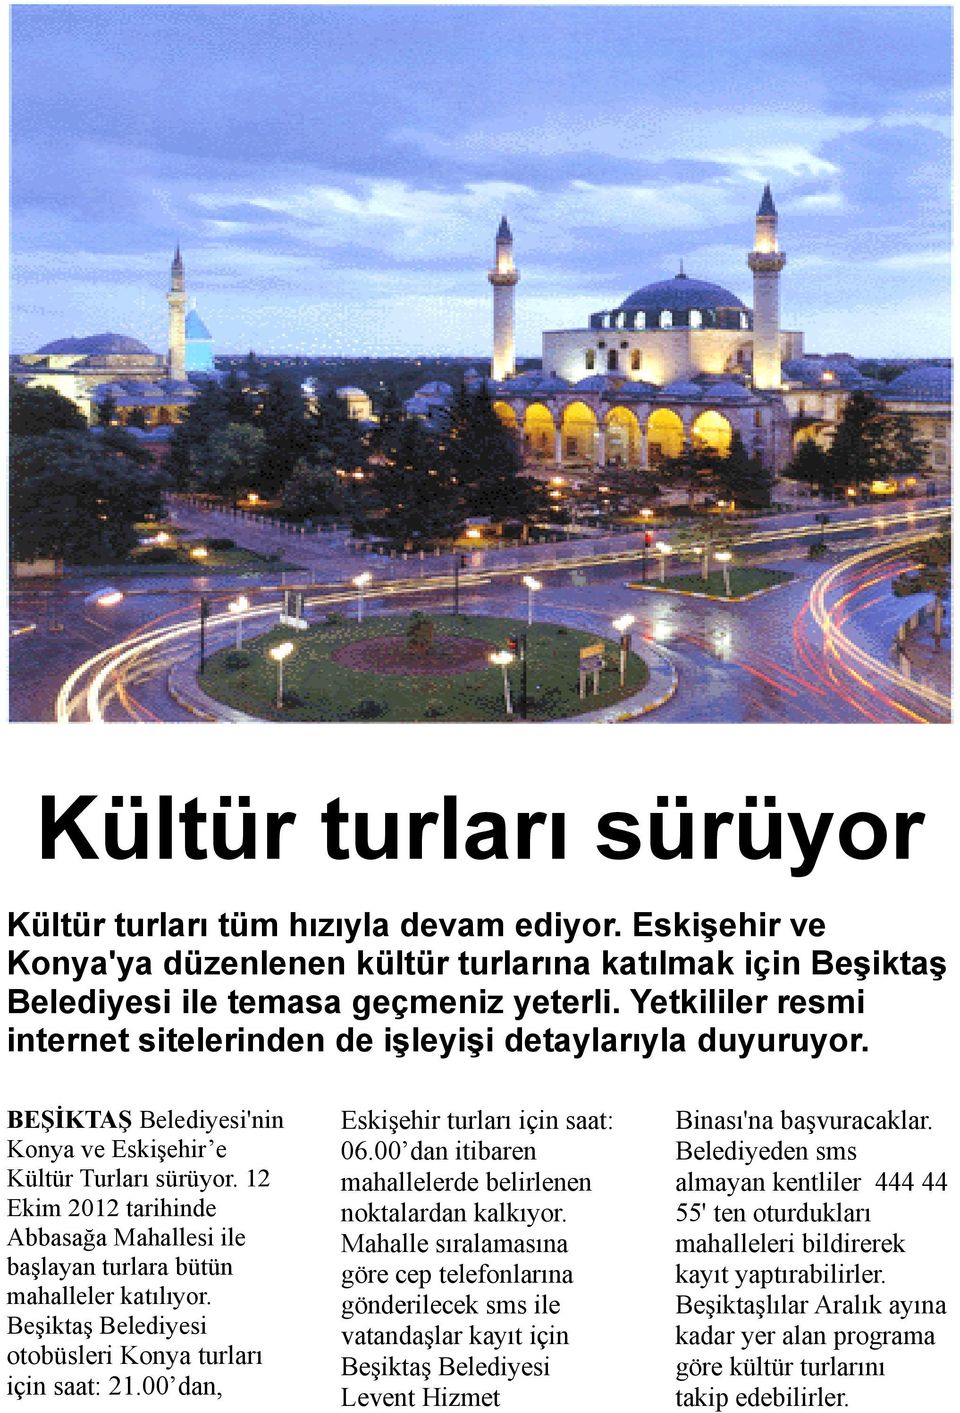 12 Ekim 2012 tarihinde Abbasağa Mahallesi ile başlayan turlara bütün mahalleler katılıyor. Beşiktaş Belediyesi otobüsleri Konya turları için saat: 21.00 dan, Eskişehir turları için saat: 06.